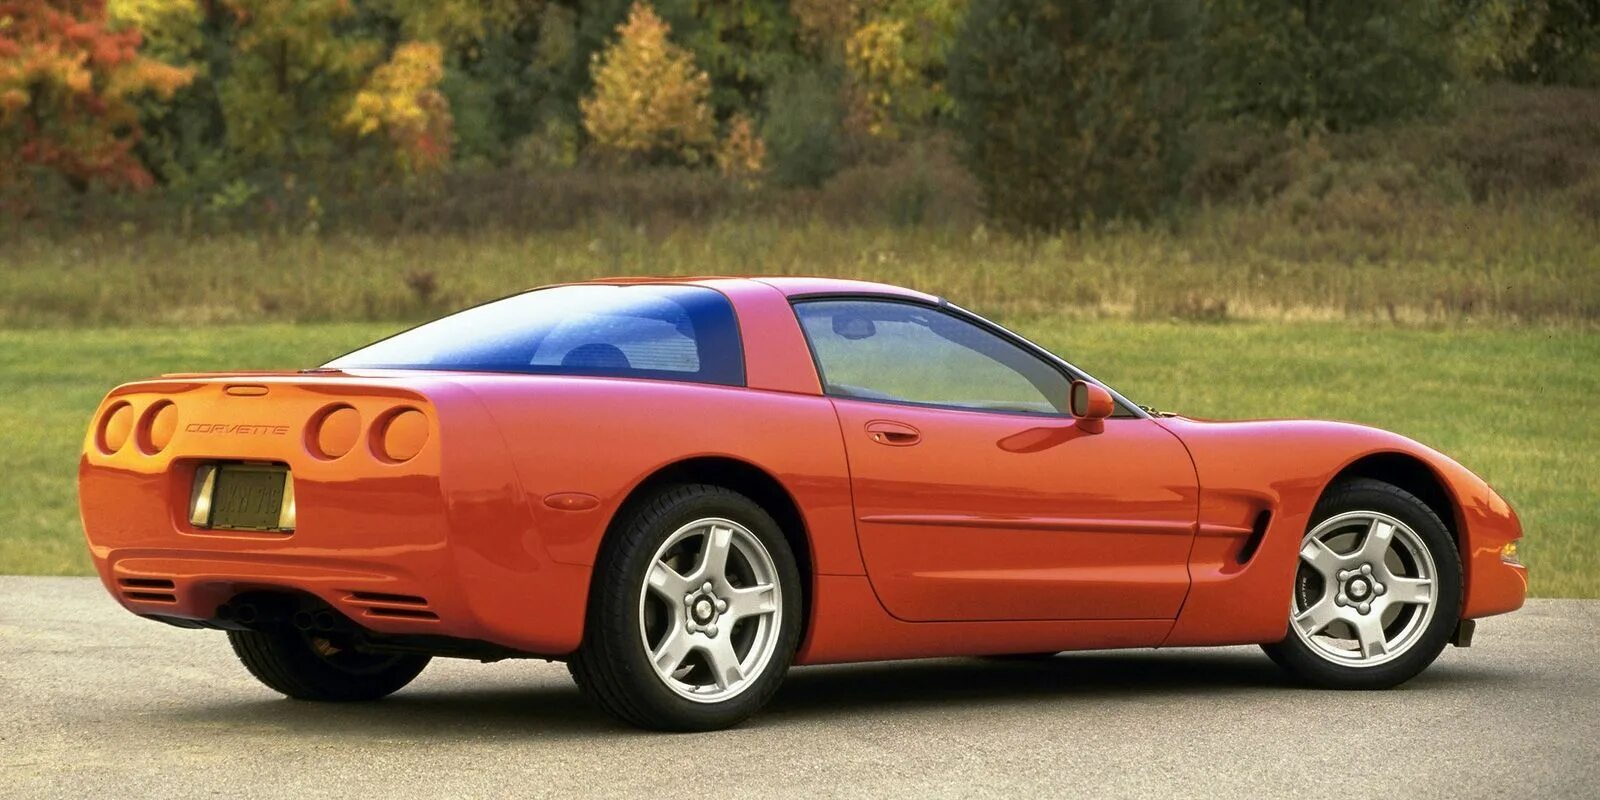 Chevrolet Corvette 1997. Chevrolet Corvette c5. Chevrolet Corvette c5 1997. Chevrolet Corvette c5 1997 - 2004.